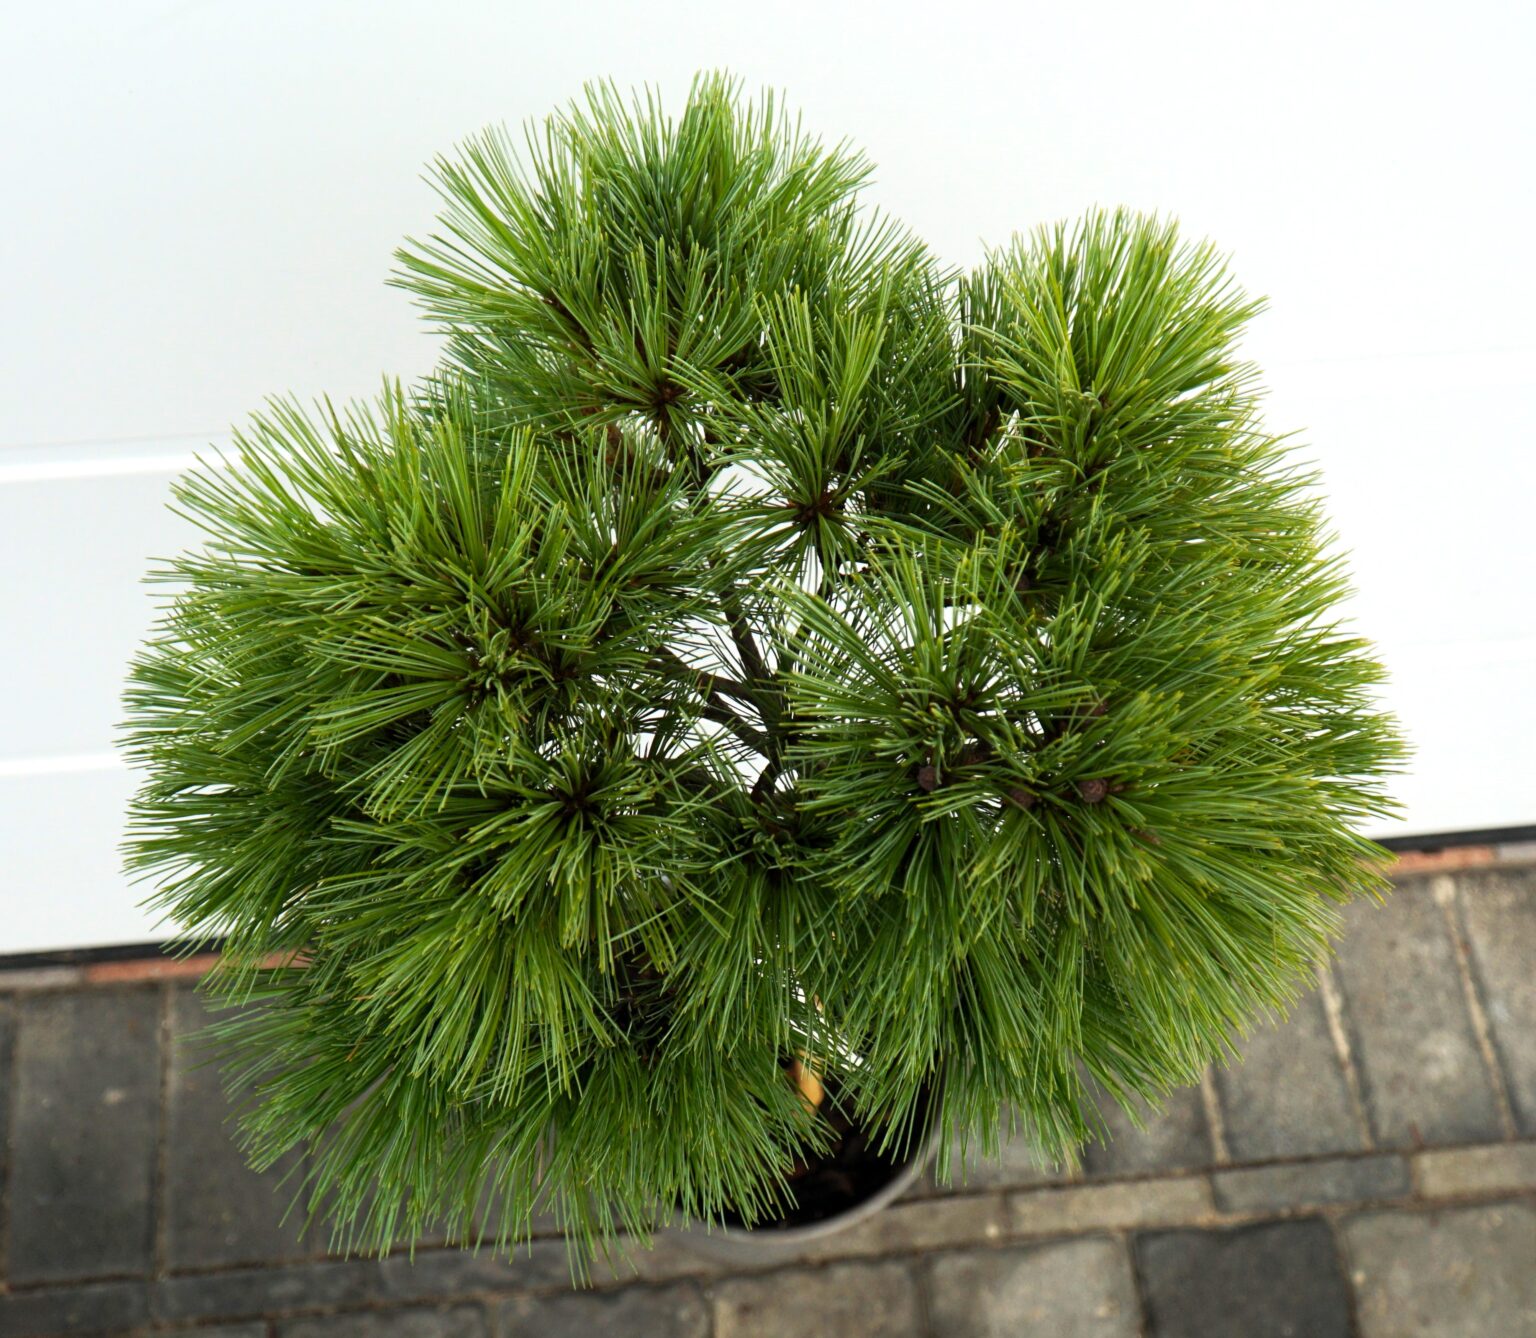 SOSNA WEJMUTKA MARY SWEENEY Pinus strobus